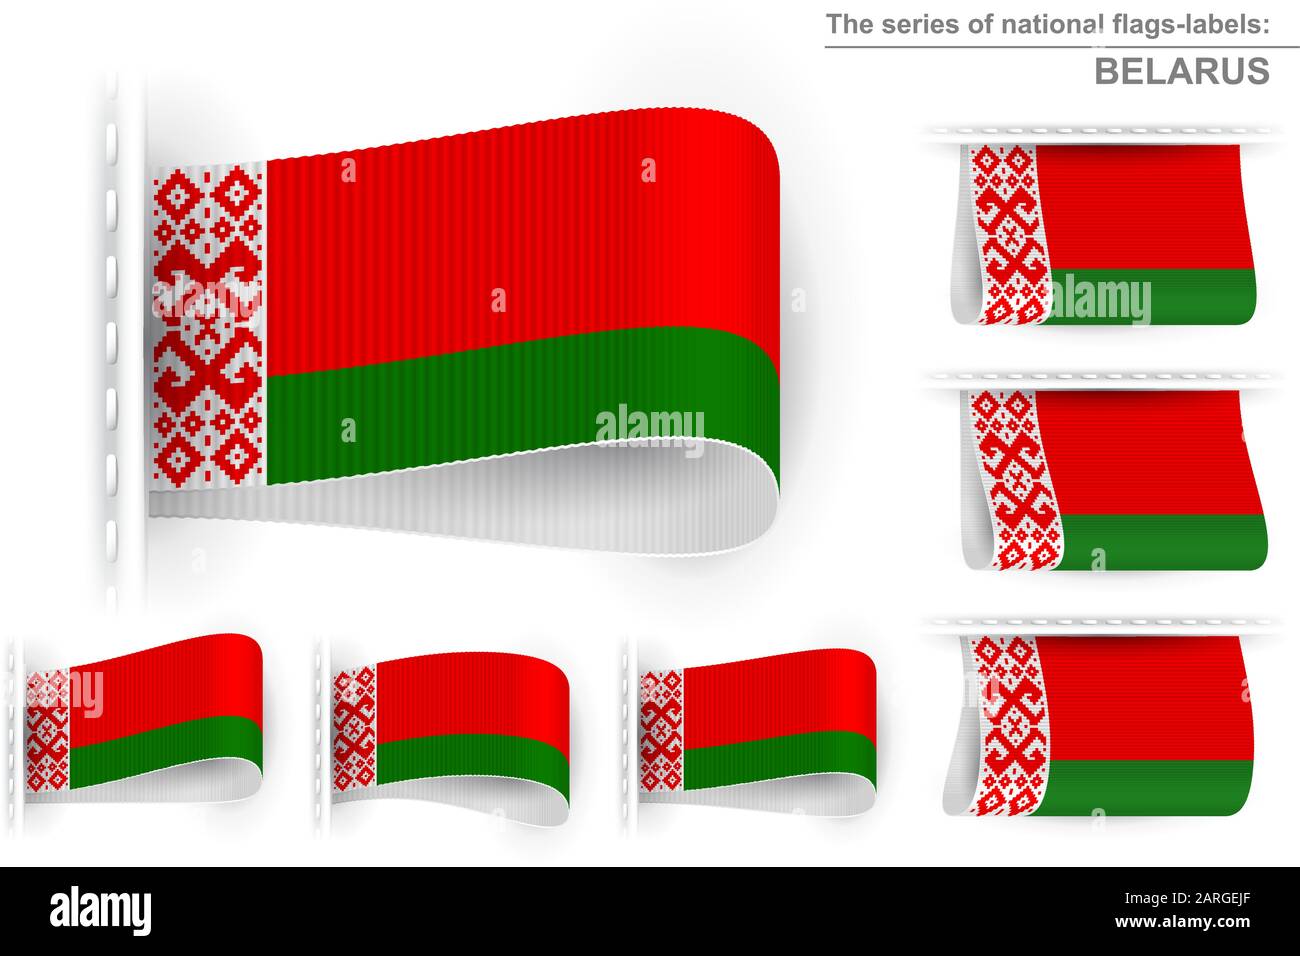 Staatsflaggen der Republik Weißrussland; Aufgenähtes Bekleidungsetikett;  Vector Set Byelorussia Flags Eps10 Stock-Vektorgrafik - Alamy